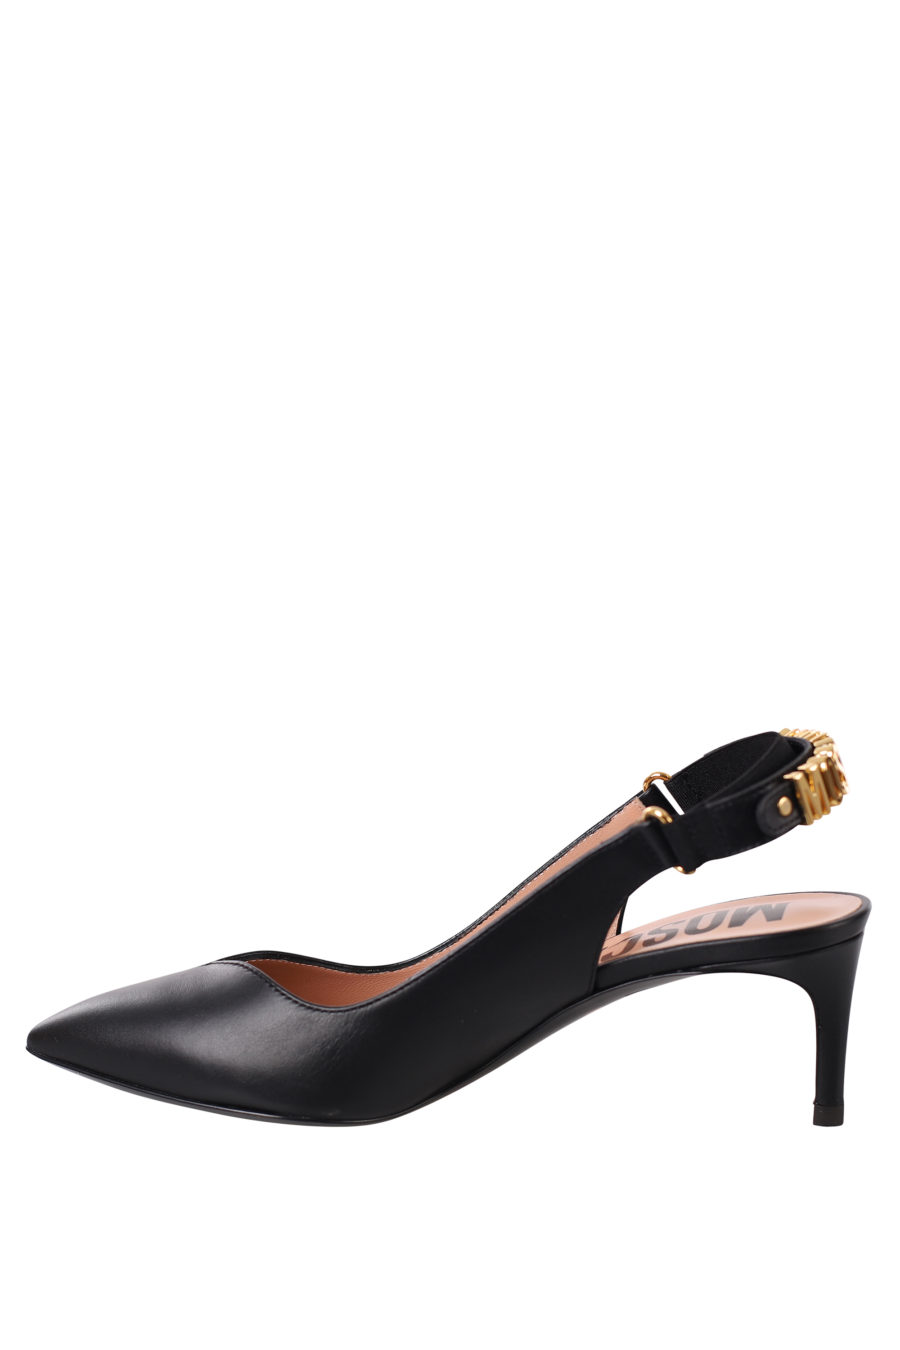 Black heels - IMG 0384